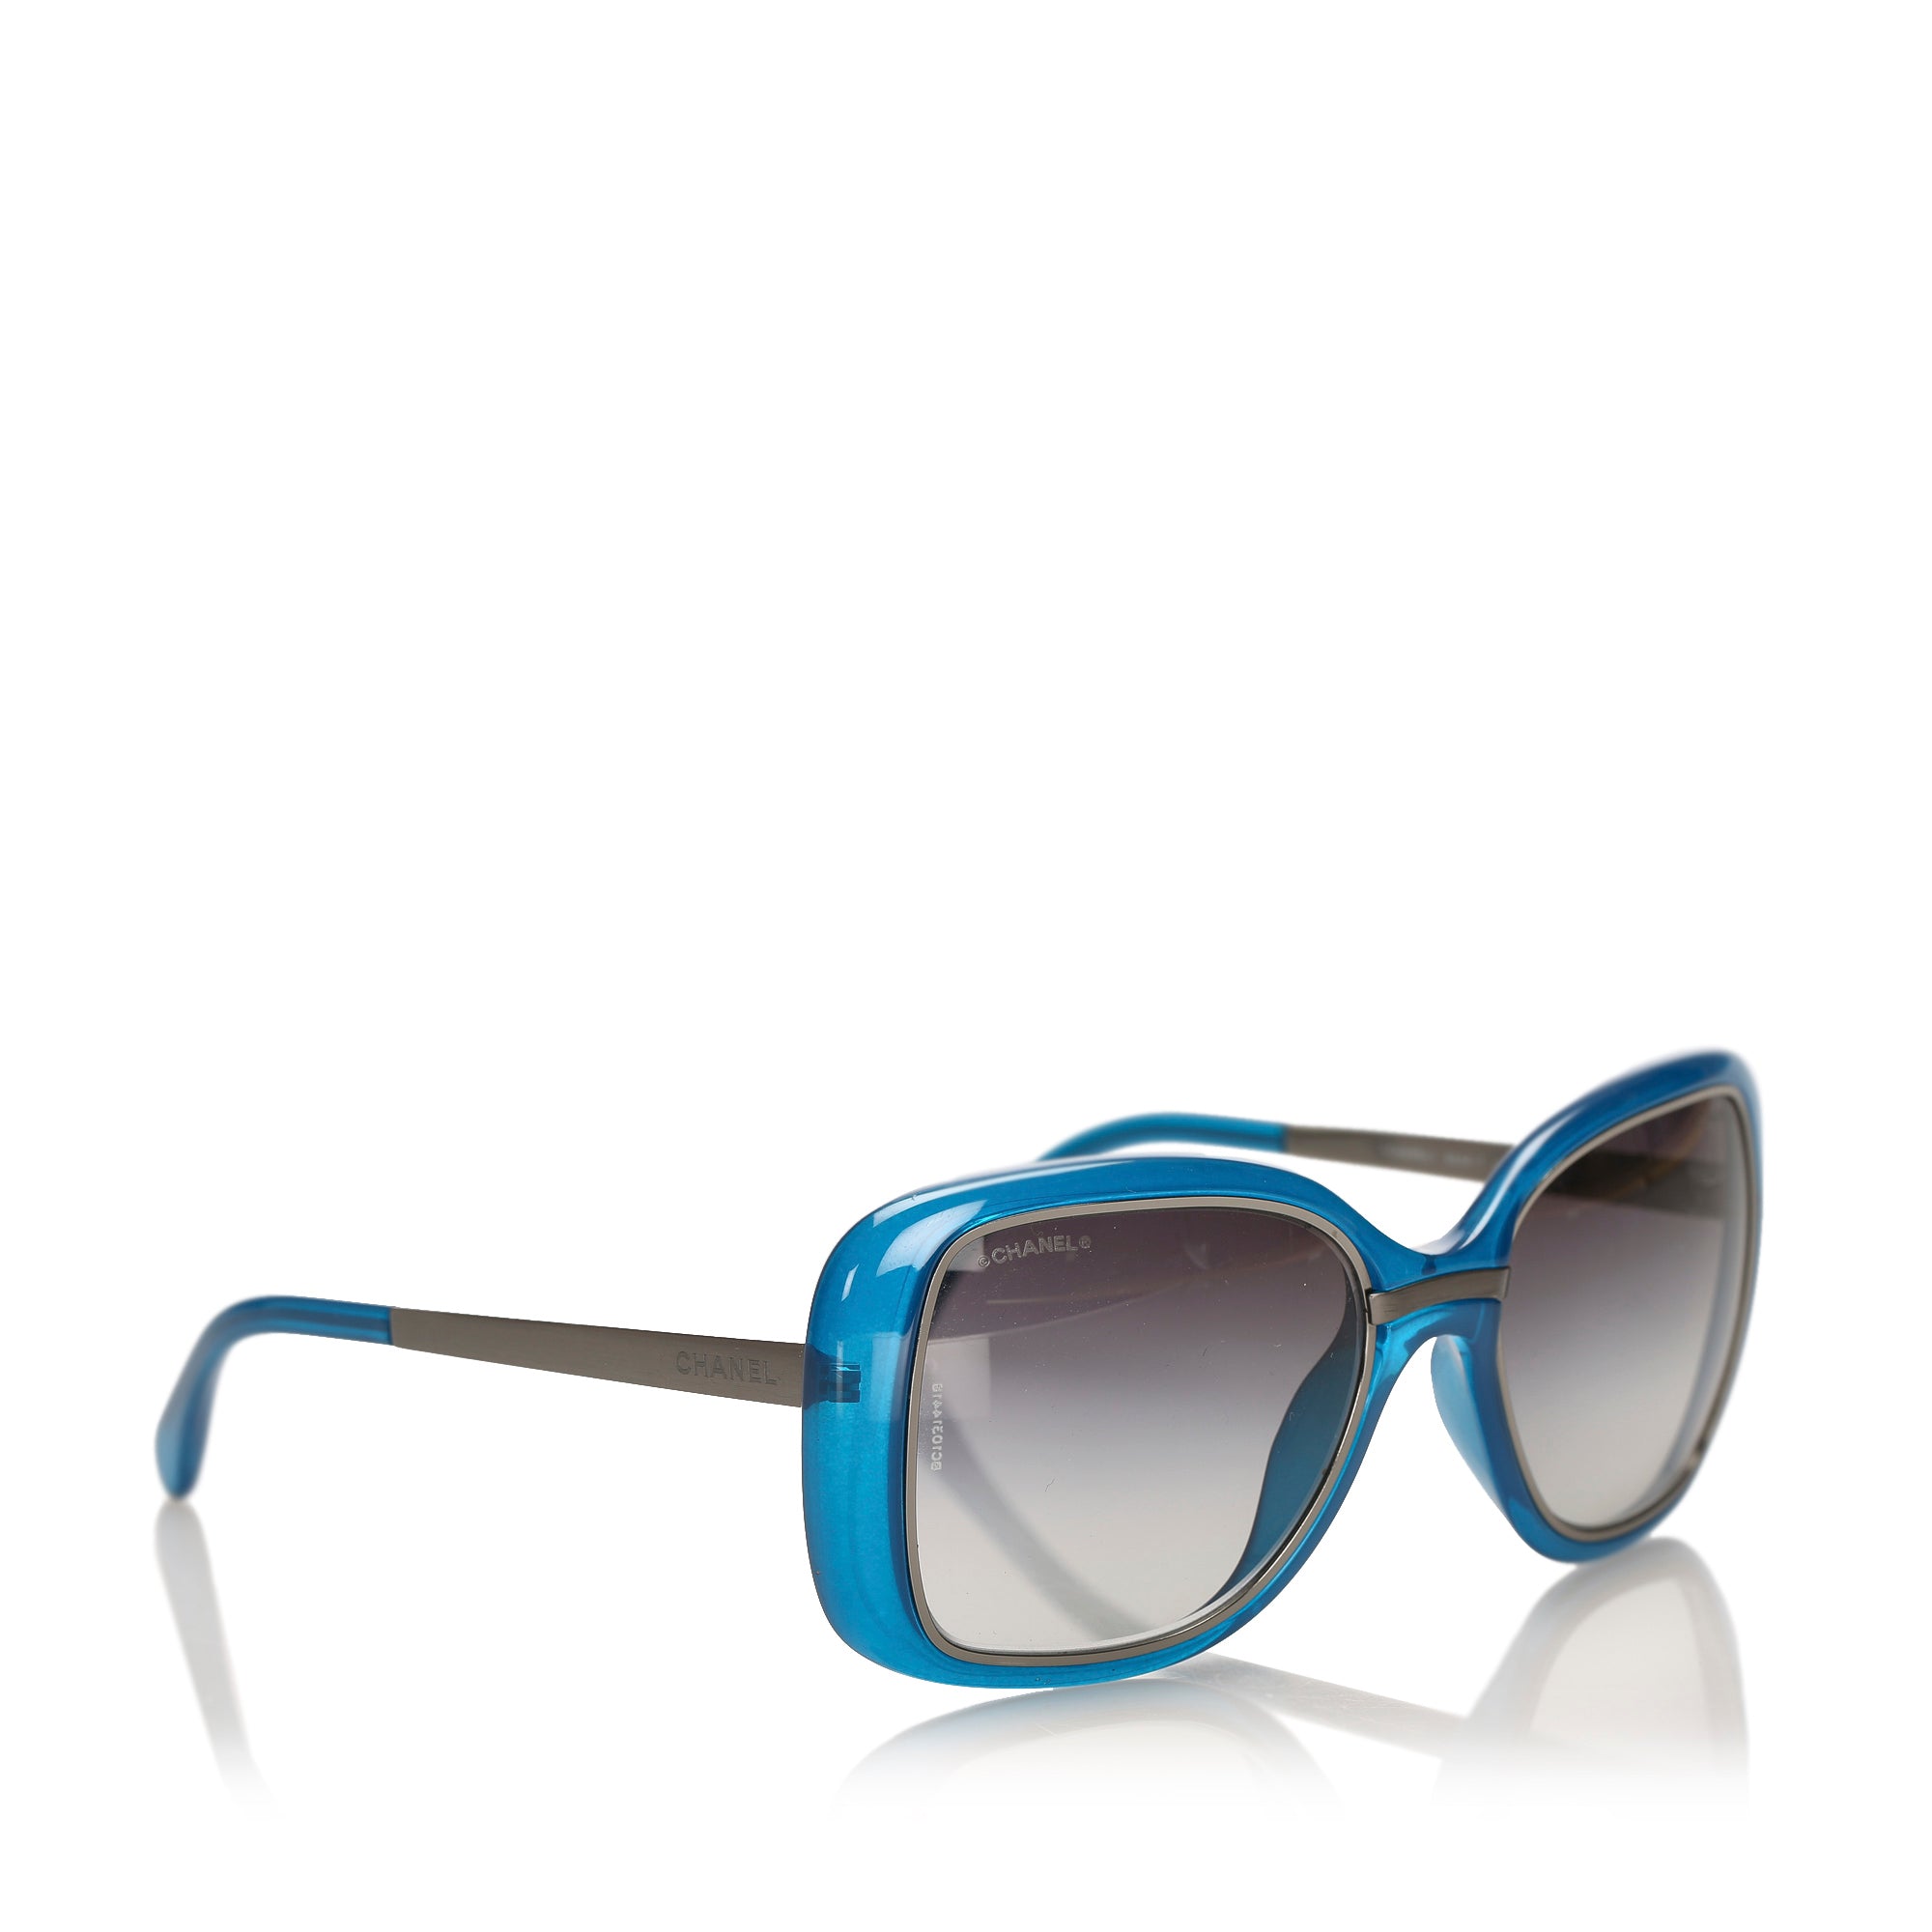 Sunglasses Chanel Blue in Plastic - 36057083